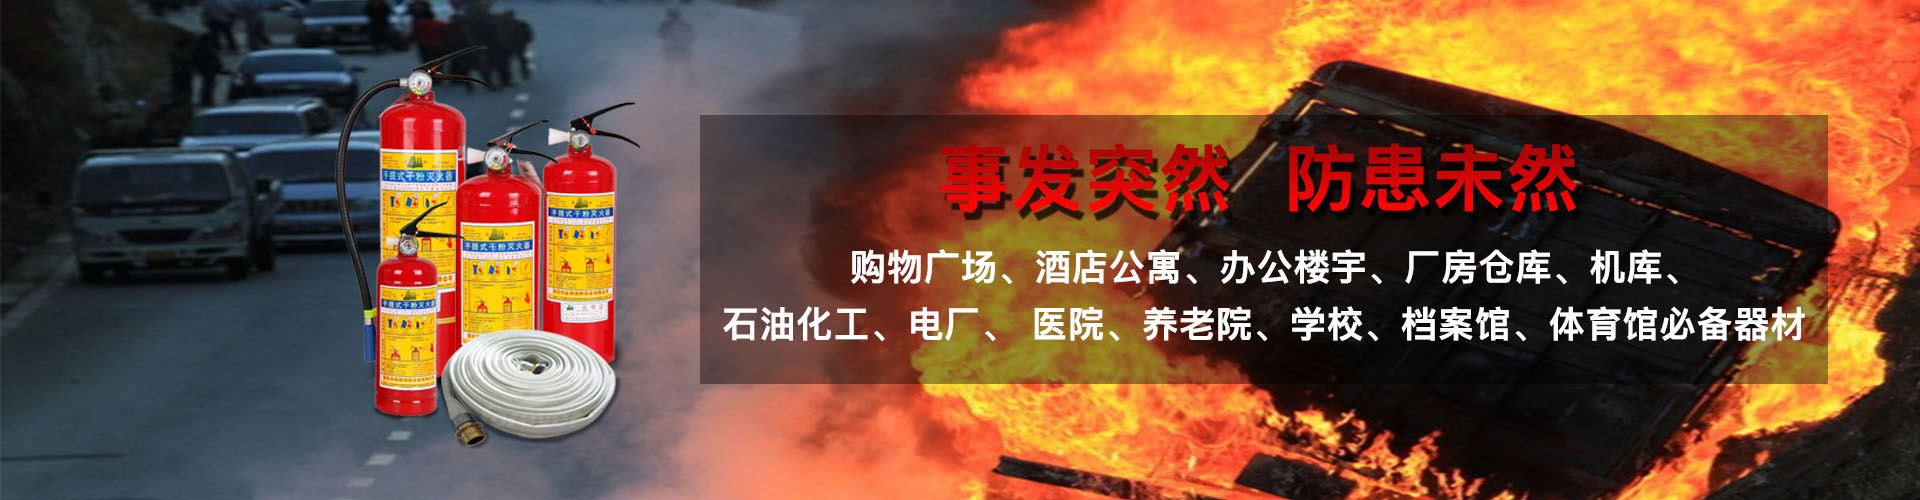 杭州消防维修保养